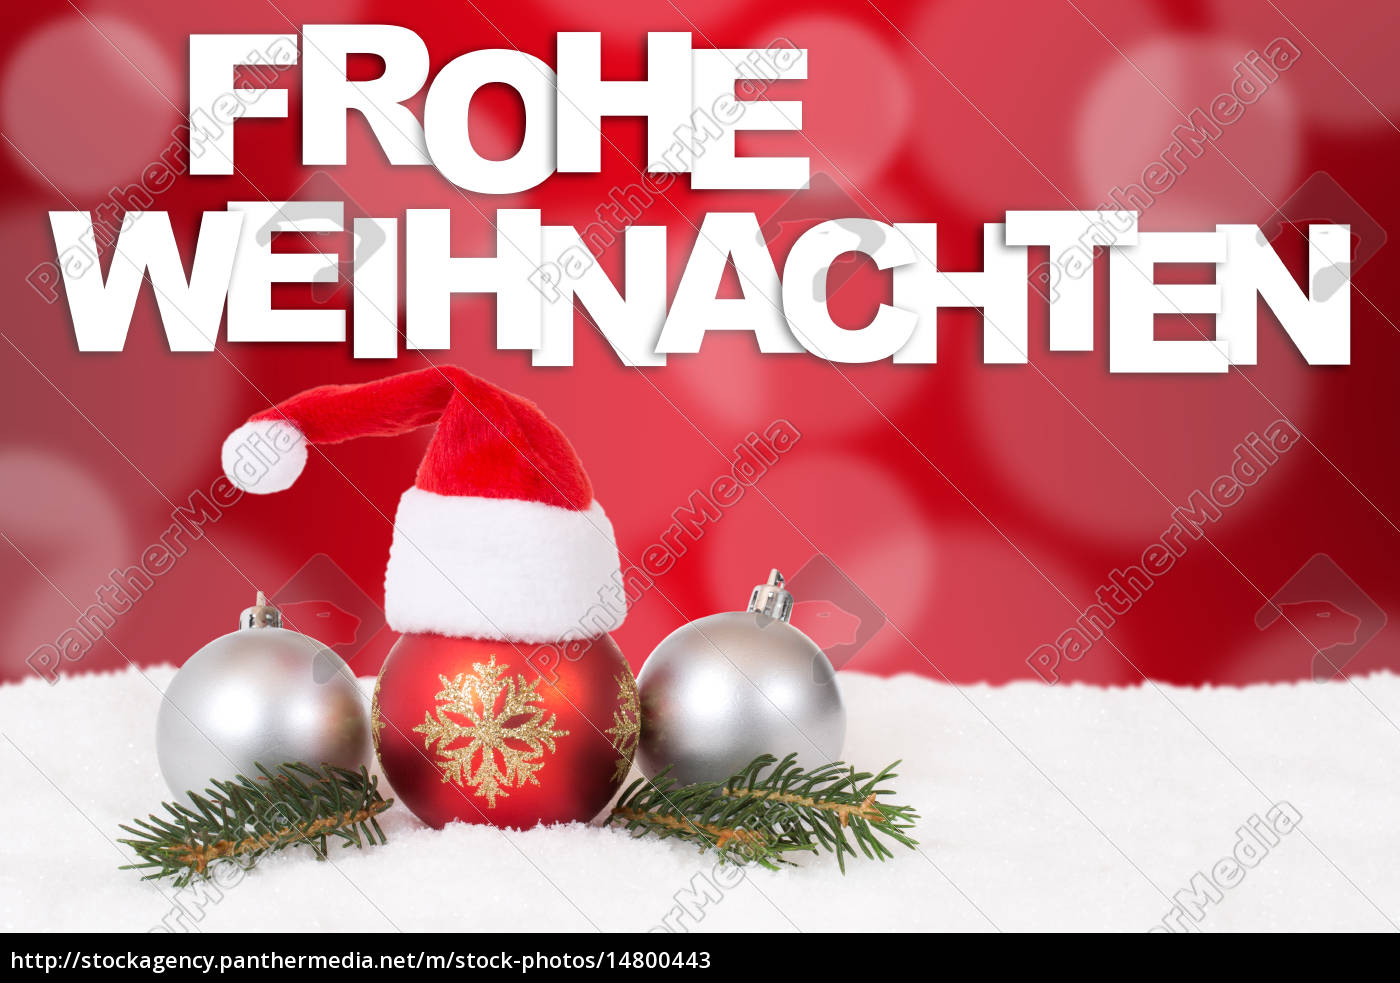 Weihnachtskarte Mit Mutze Frohe Weihnachten Stockfoto Bildagentur Panthermedia